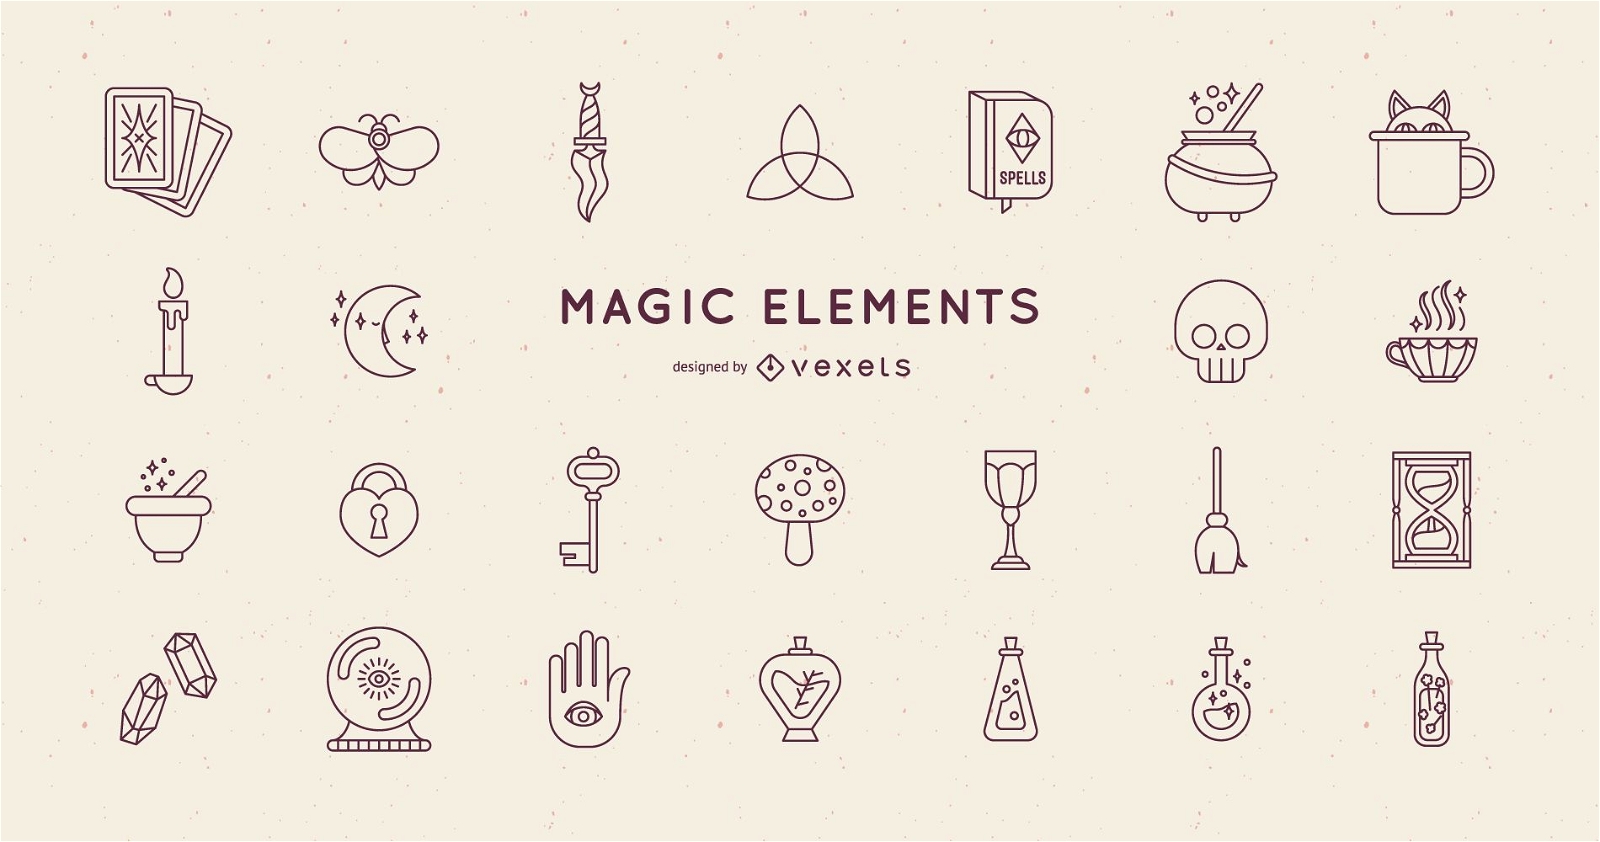 magical elemental symbols